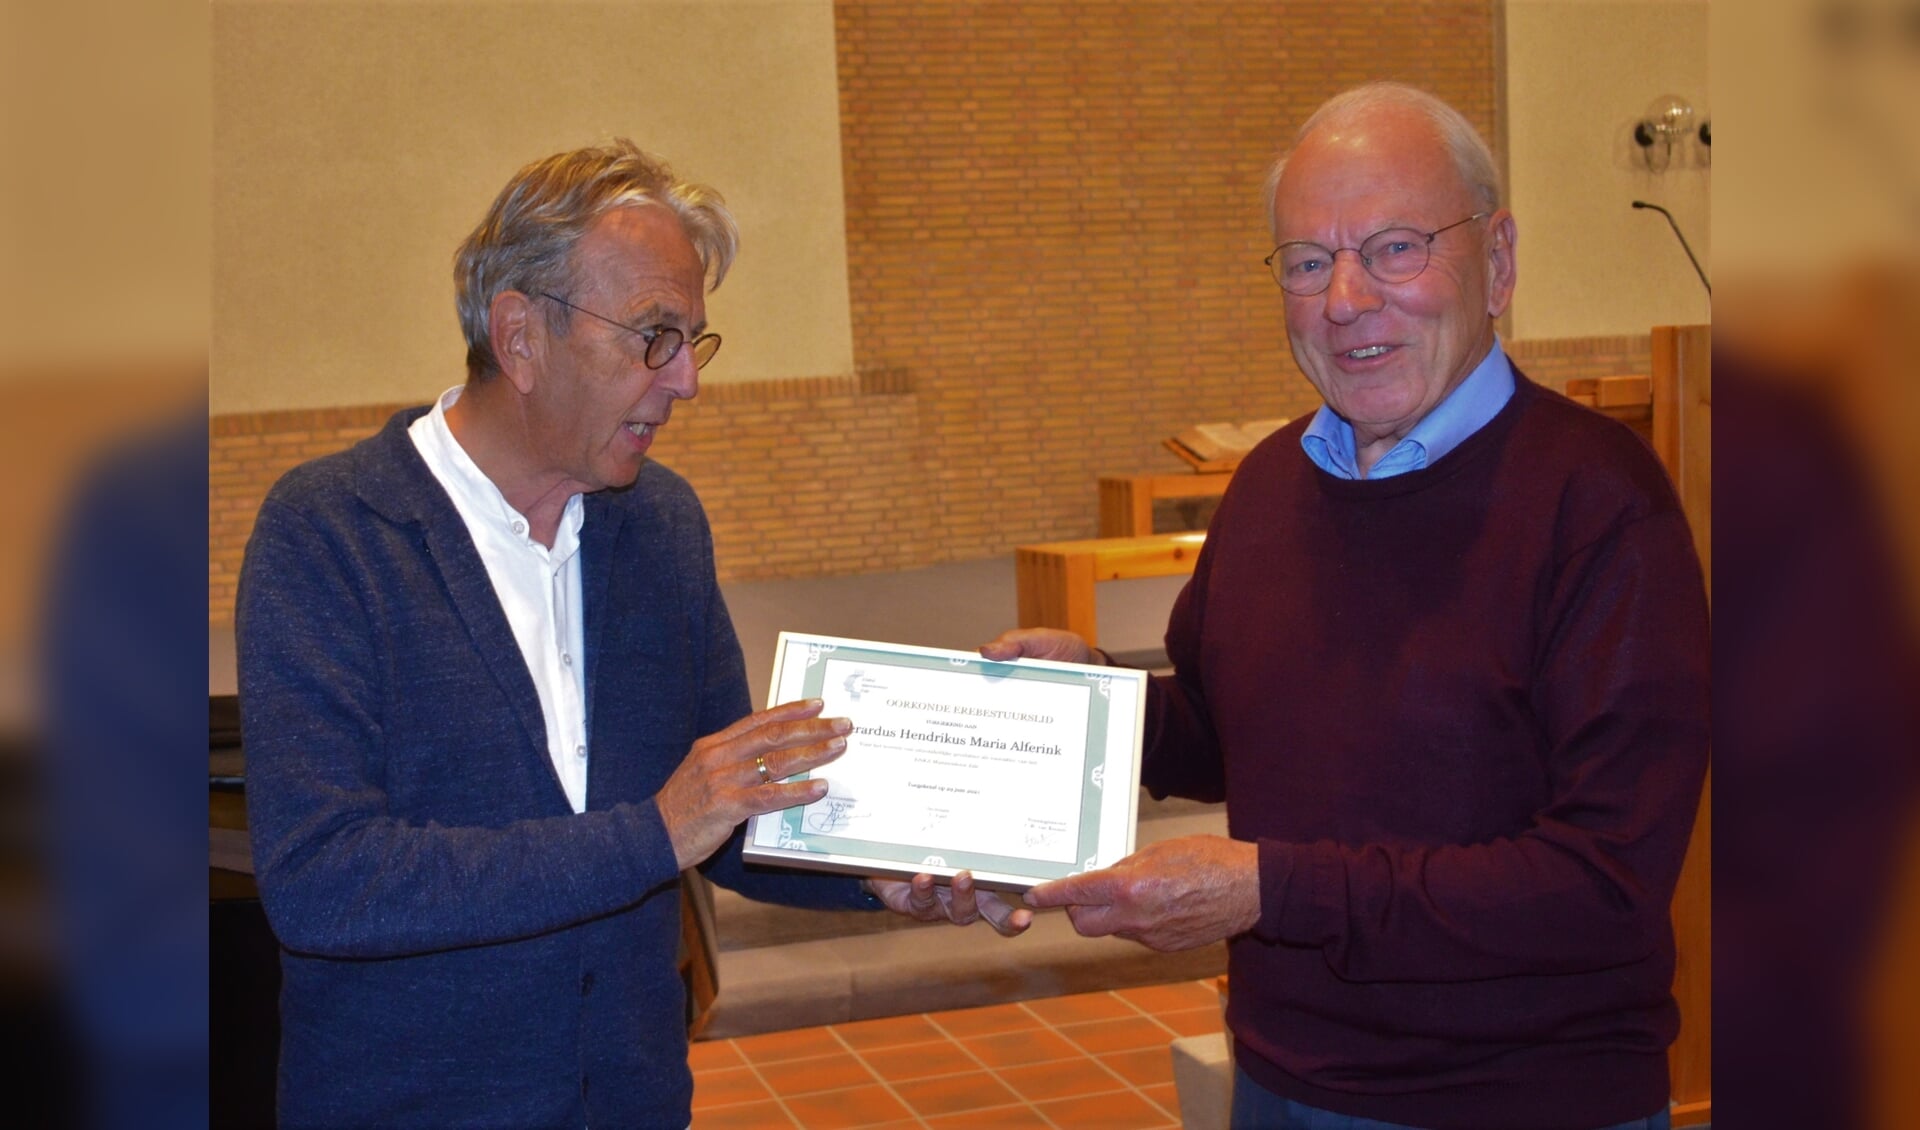 Uitreiking oorkonde Erebestuurslid aan Gerard Alferink (rechts) door Jaap de Vries. Beide mannen namen onlangs afscheid als bestuurslid van het Enka Mannenkoor in Ede.